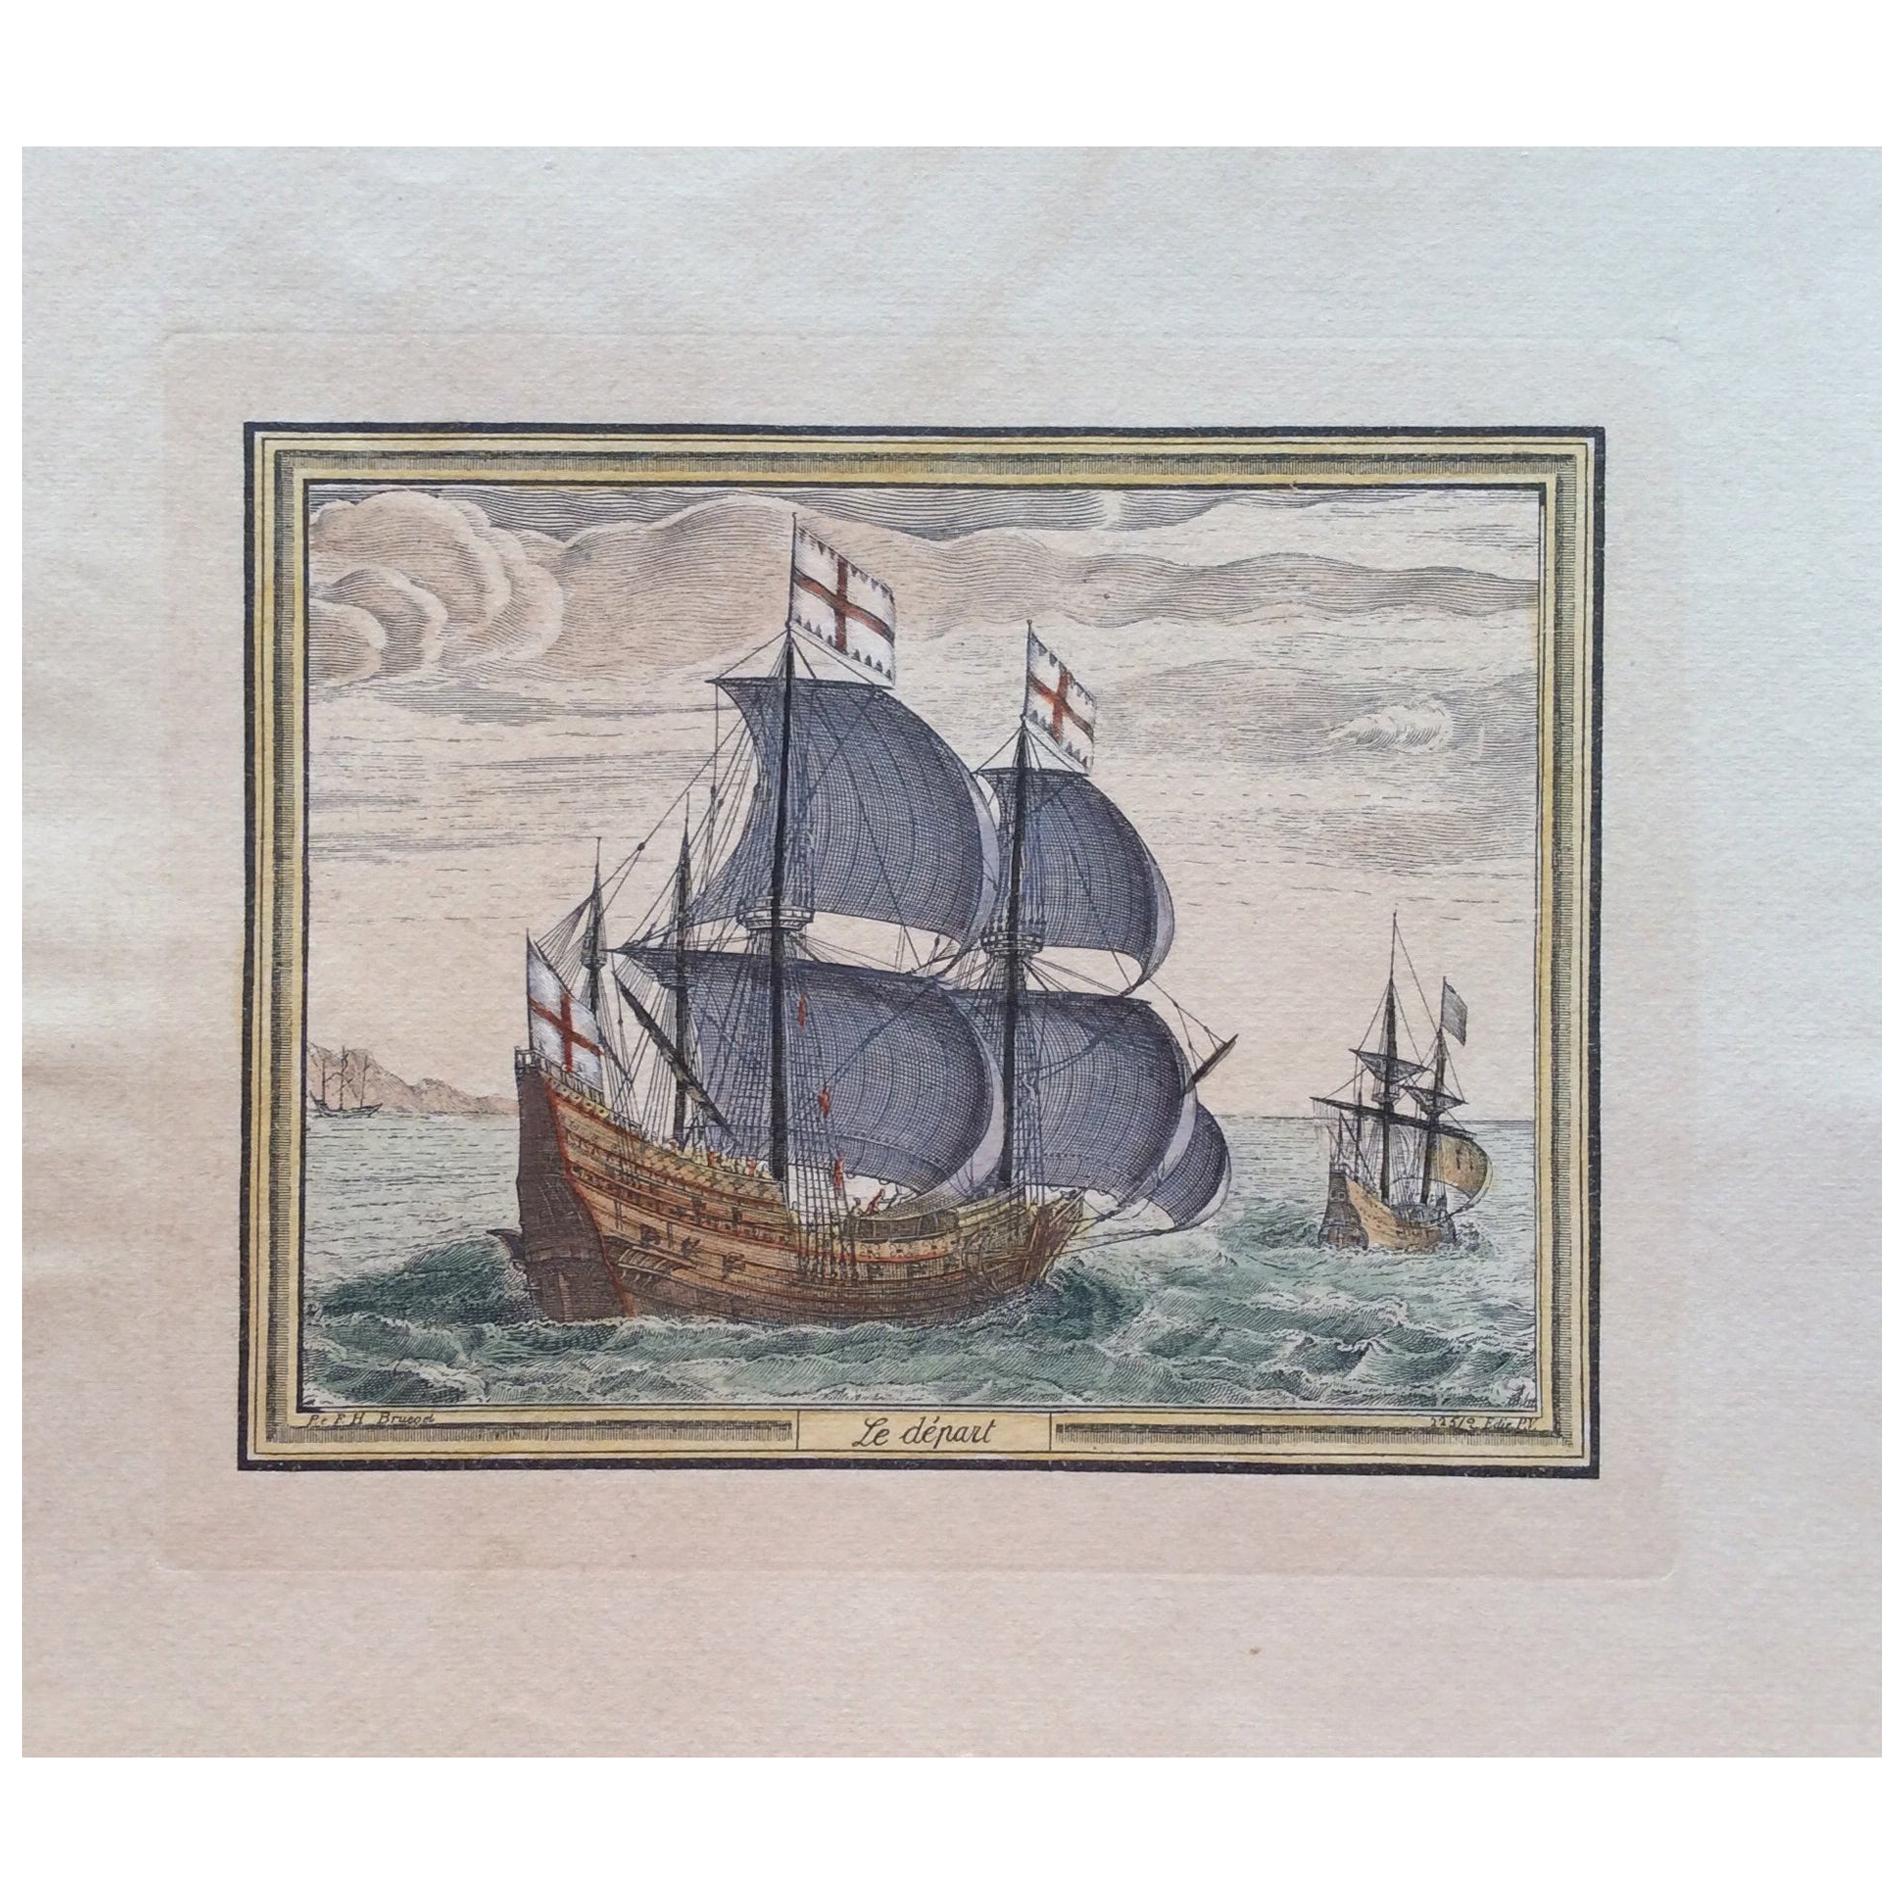 Farbgravurdruck des 18. Jahrhunderts von Pieter F.H. Le Depart, „Le Depart“